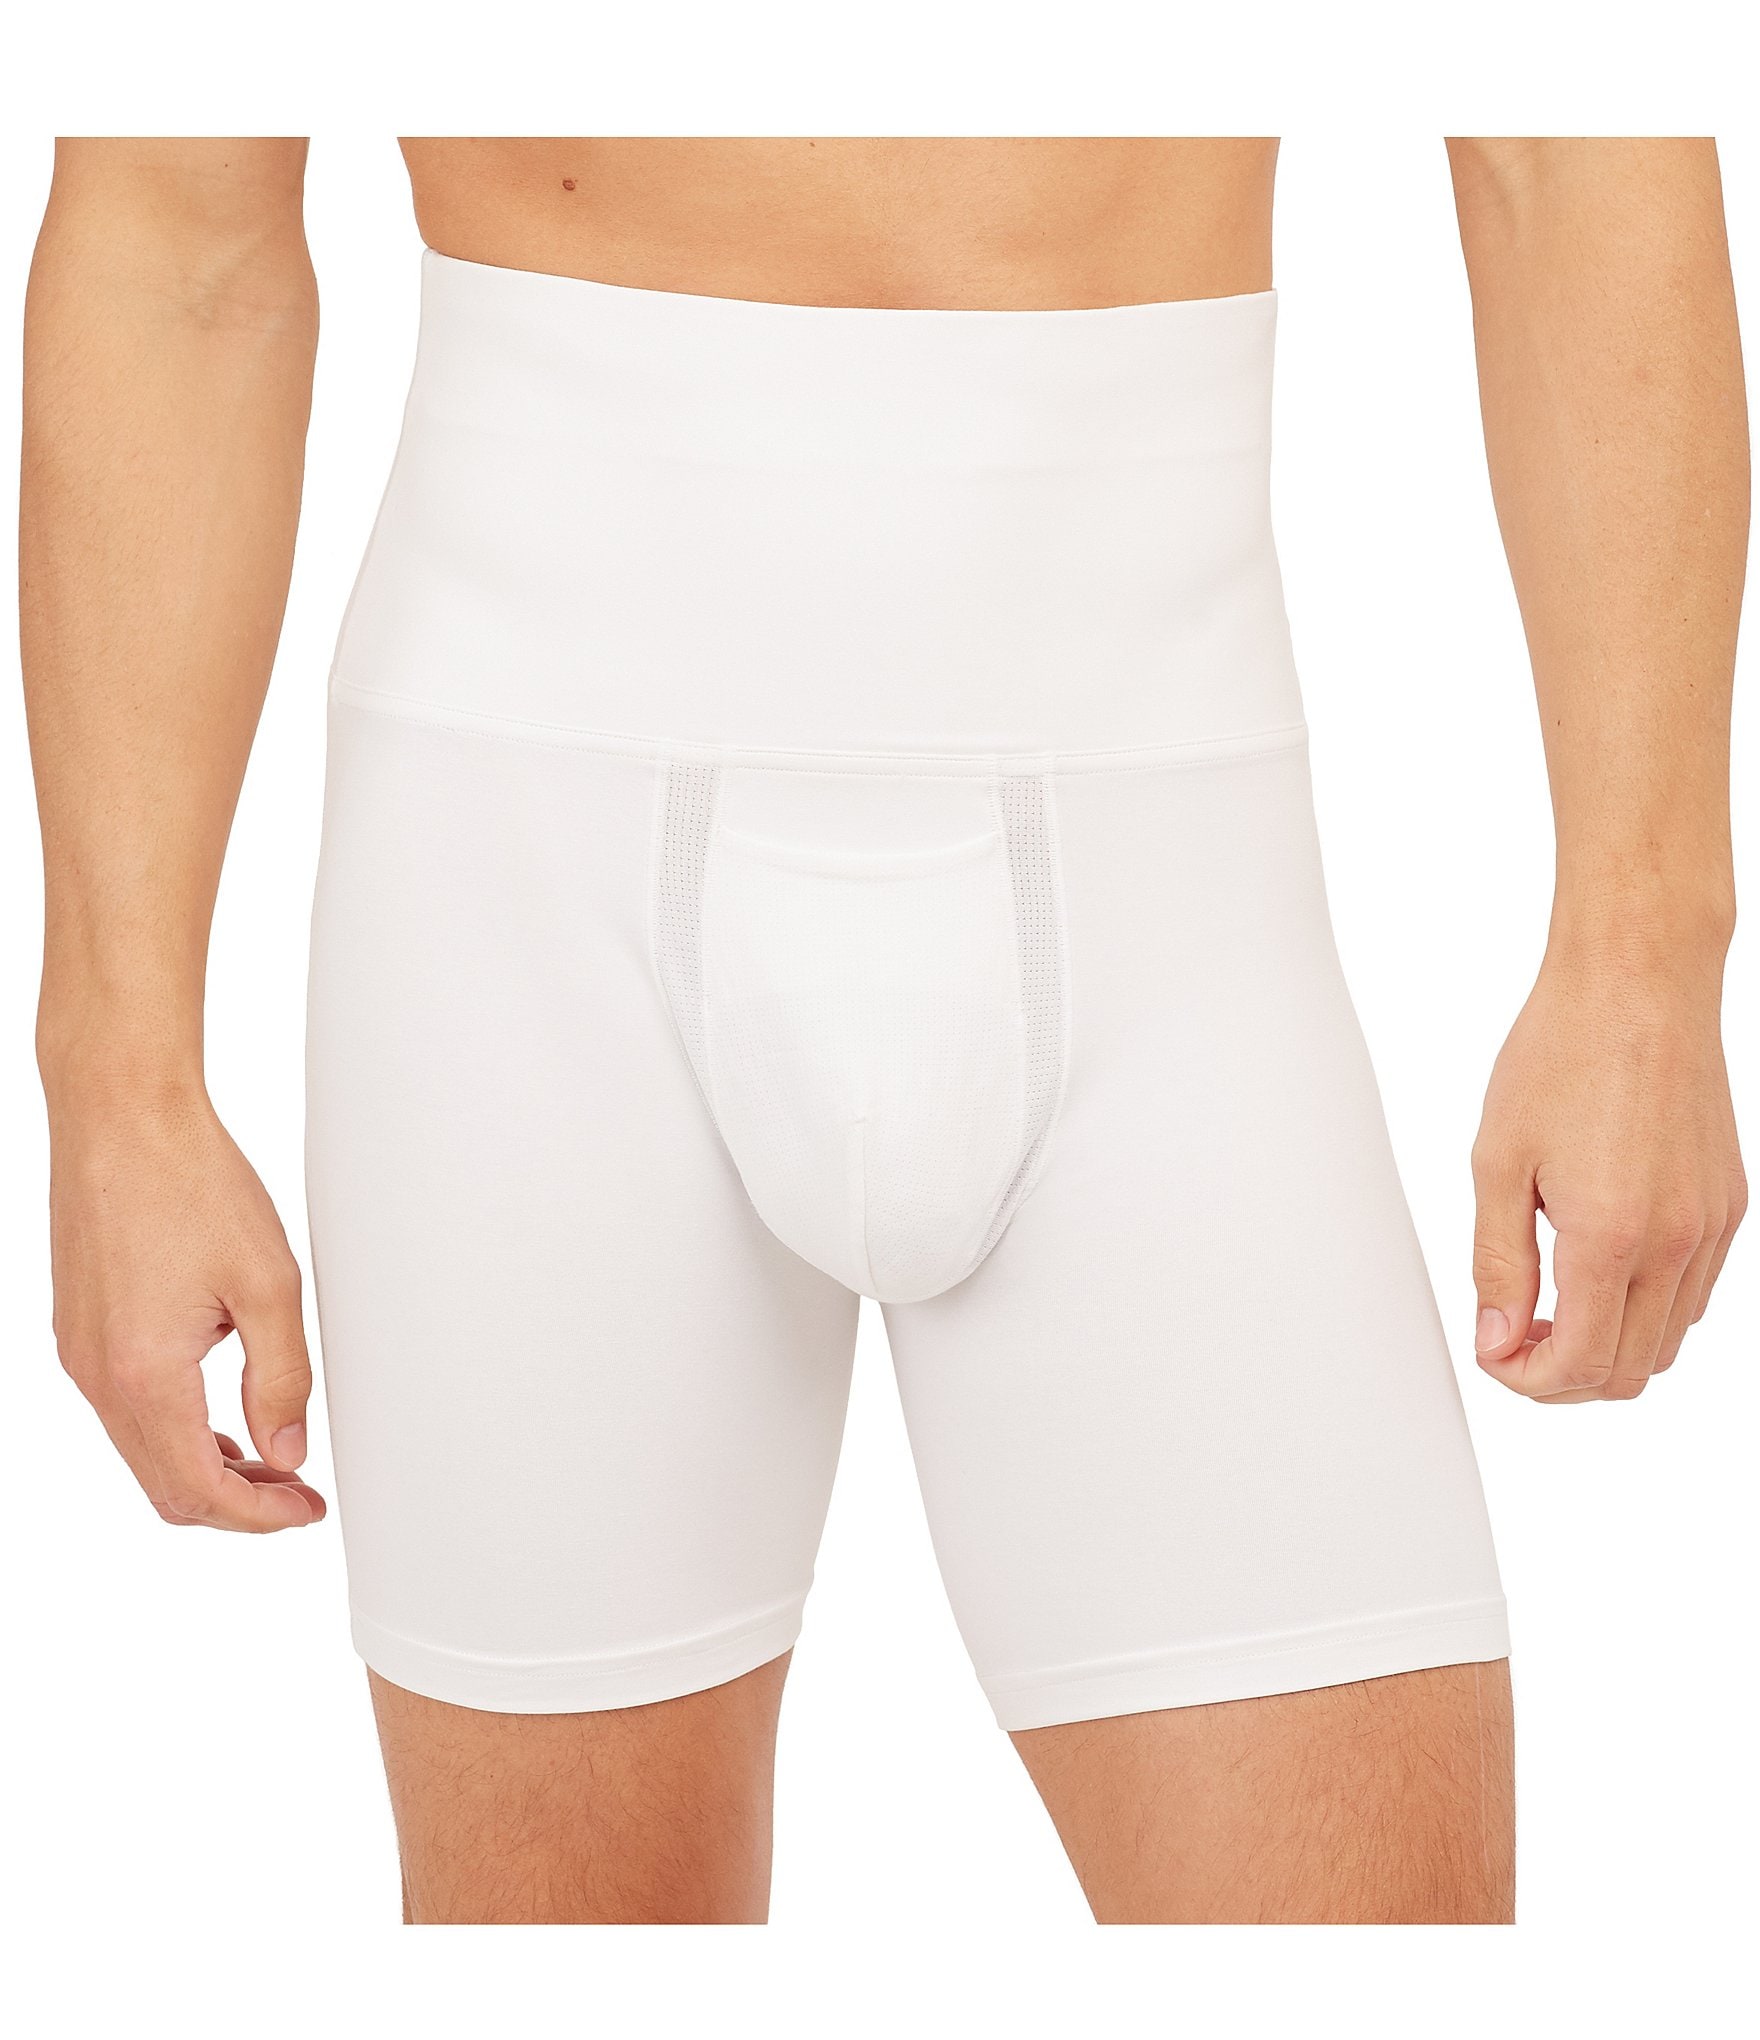 SPANX for Men Briefs Underwear at International Jock Underwear